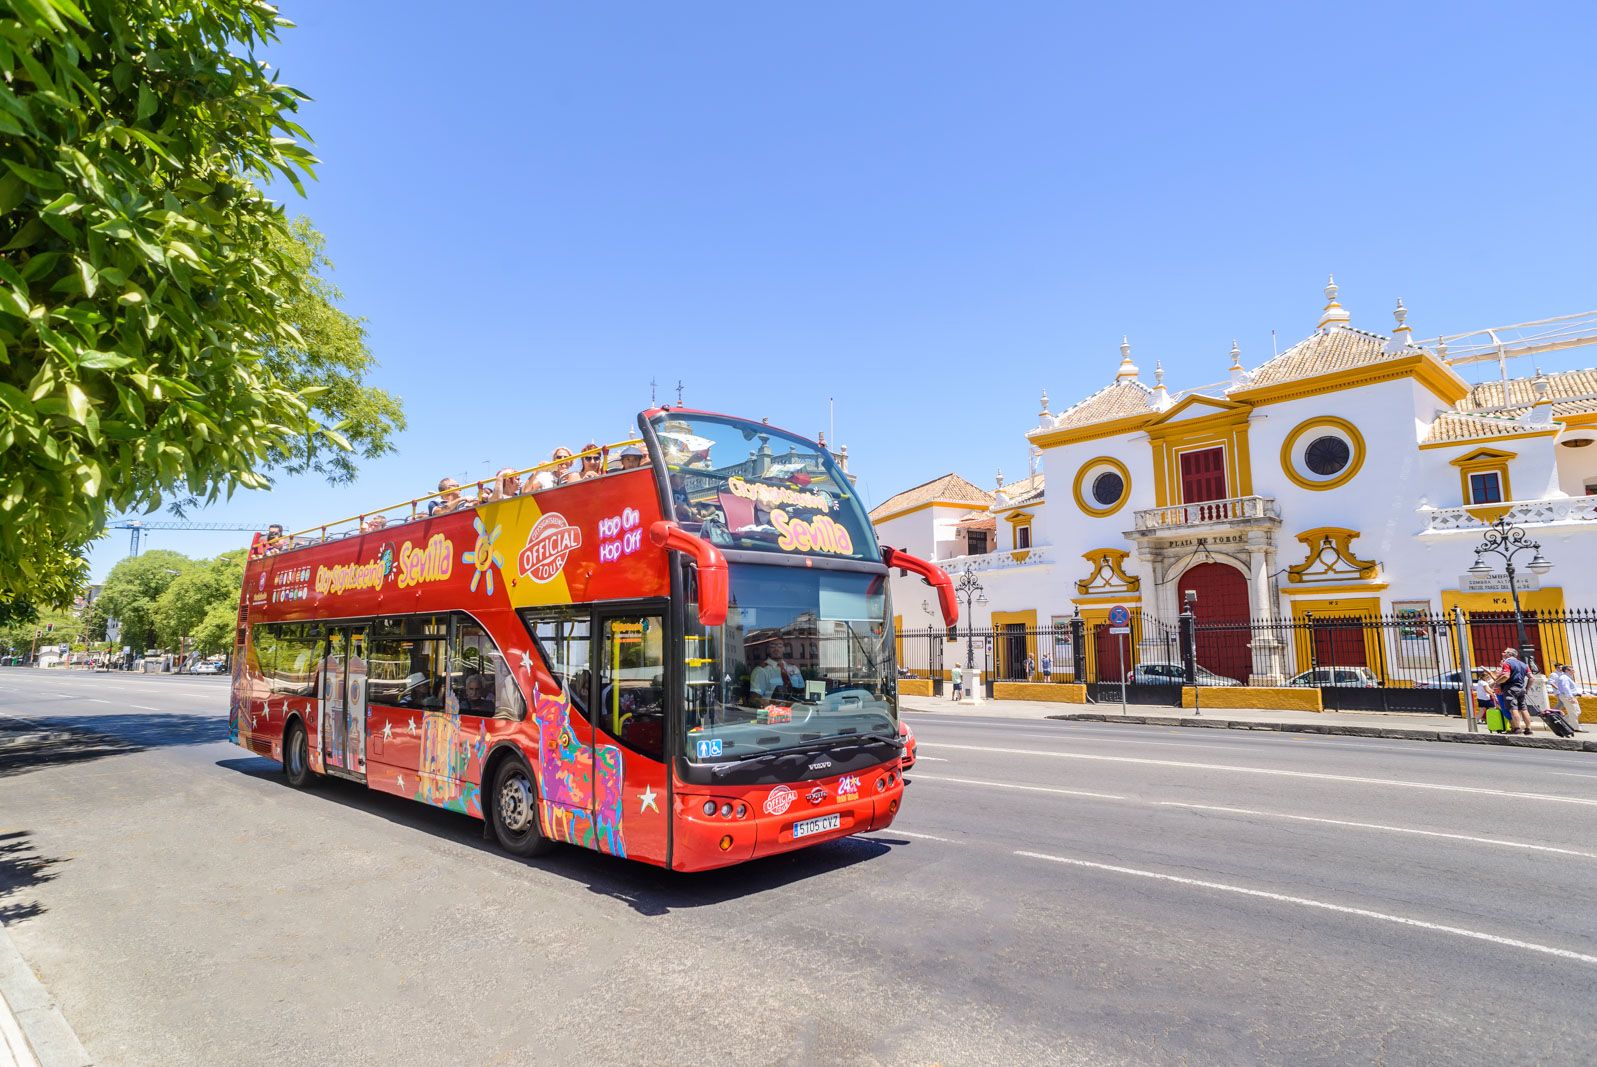 City Sightseeing, la empresa andaluza con 350 empleados solo en España y 'tours' en 100 ciudades de 35 países. En la imagen, uno de los autobuses en Sevilla.